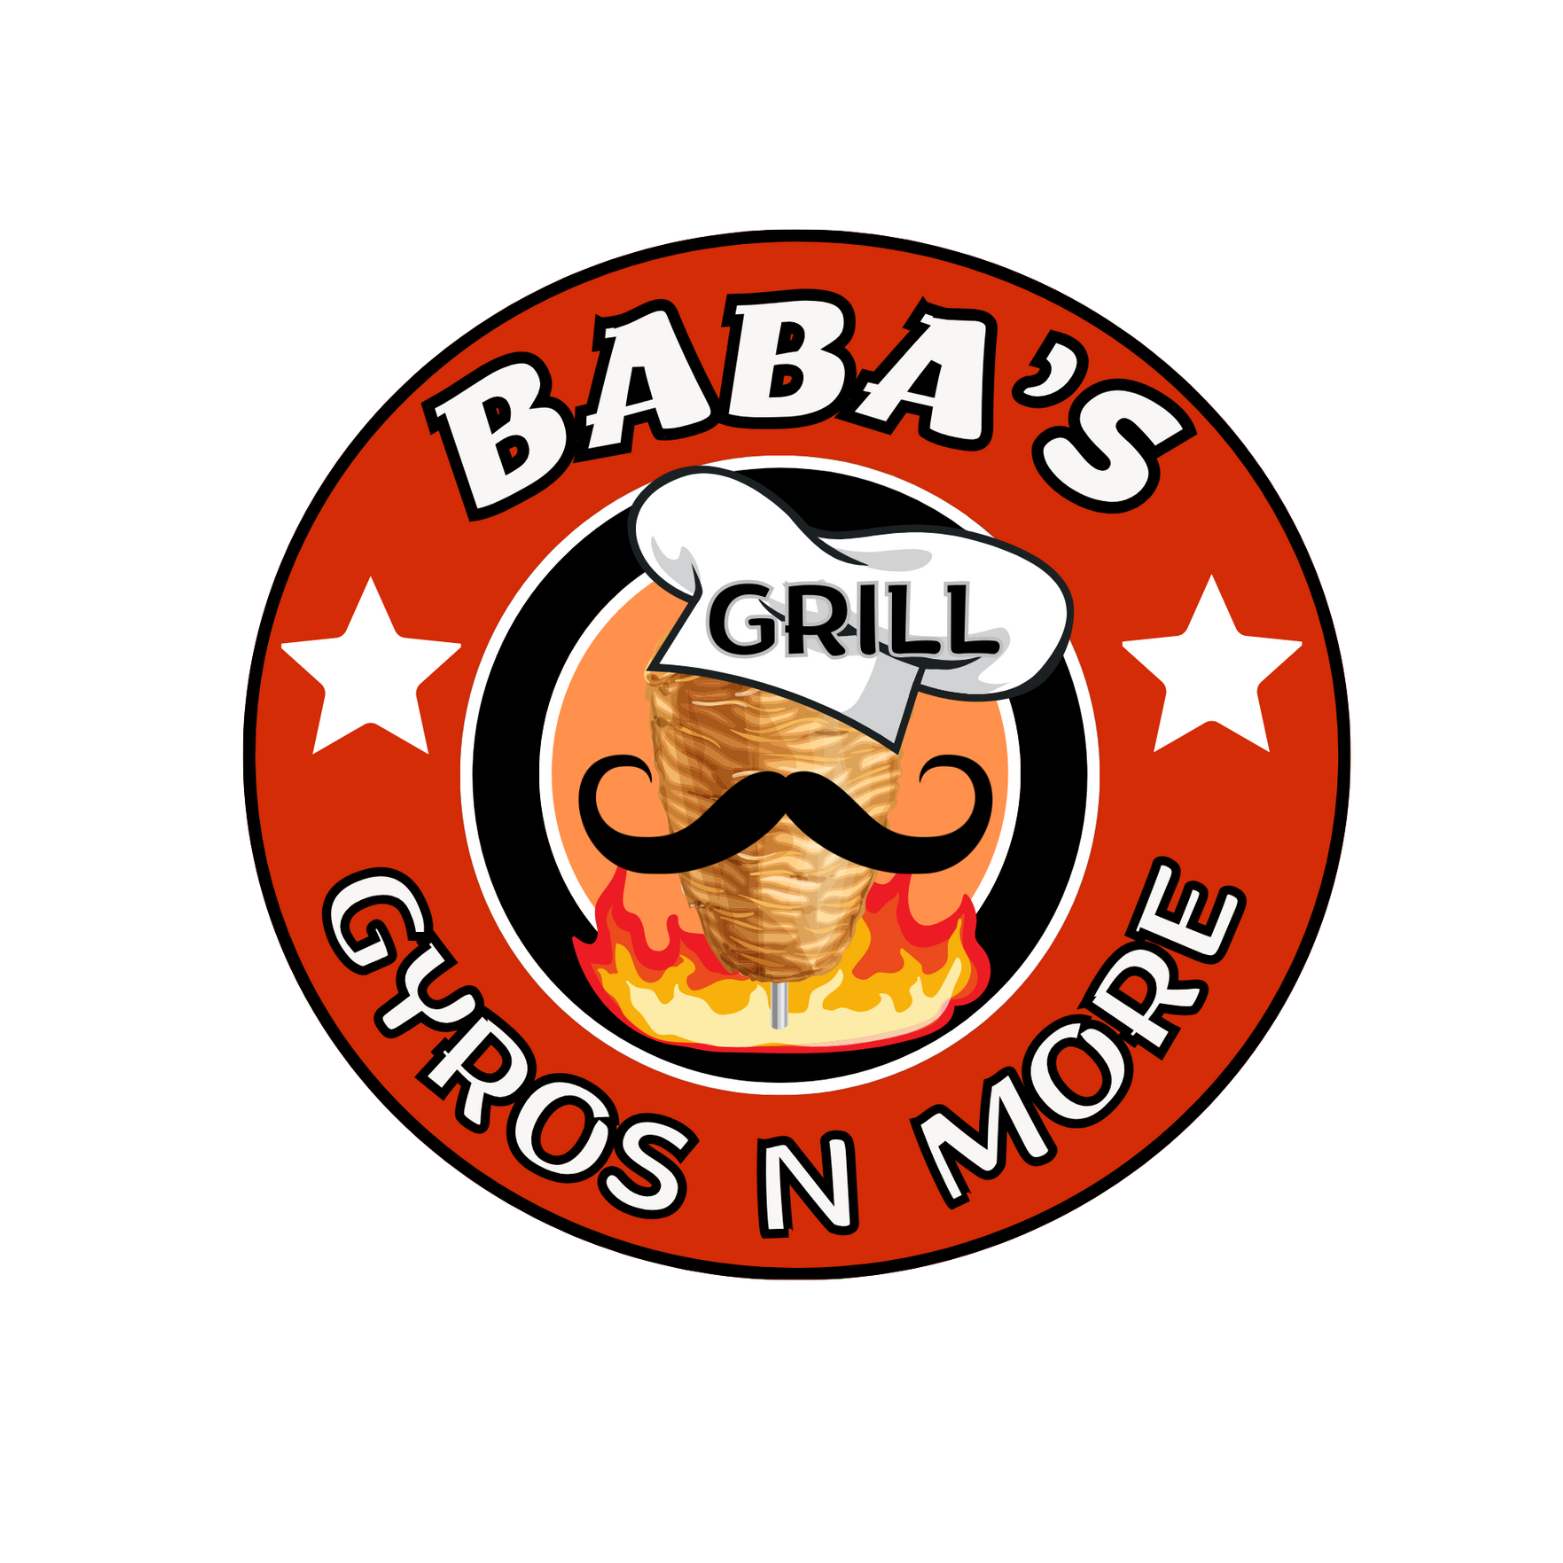 Baba's Gyros N More